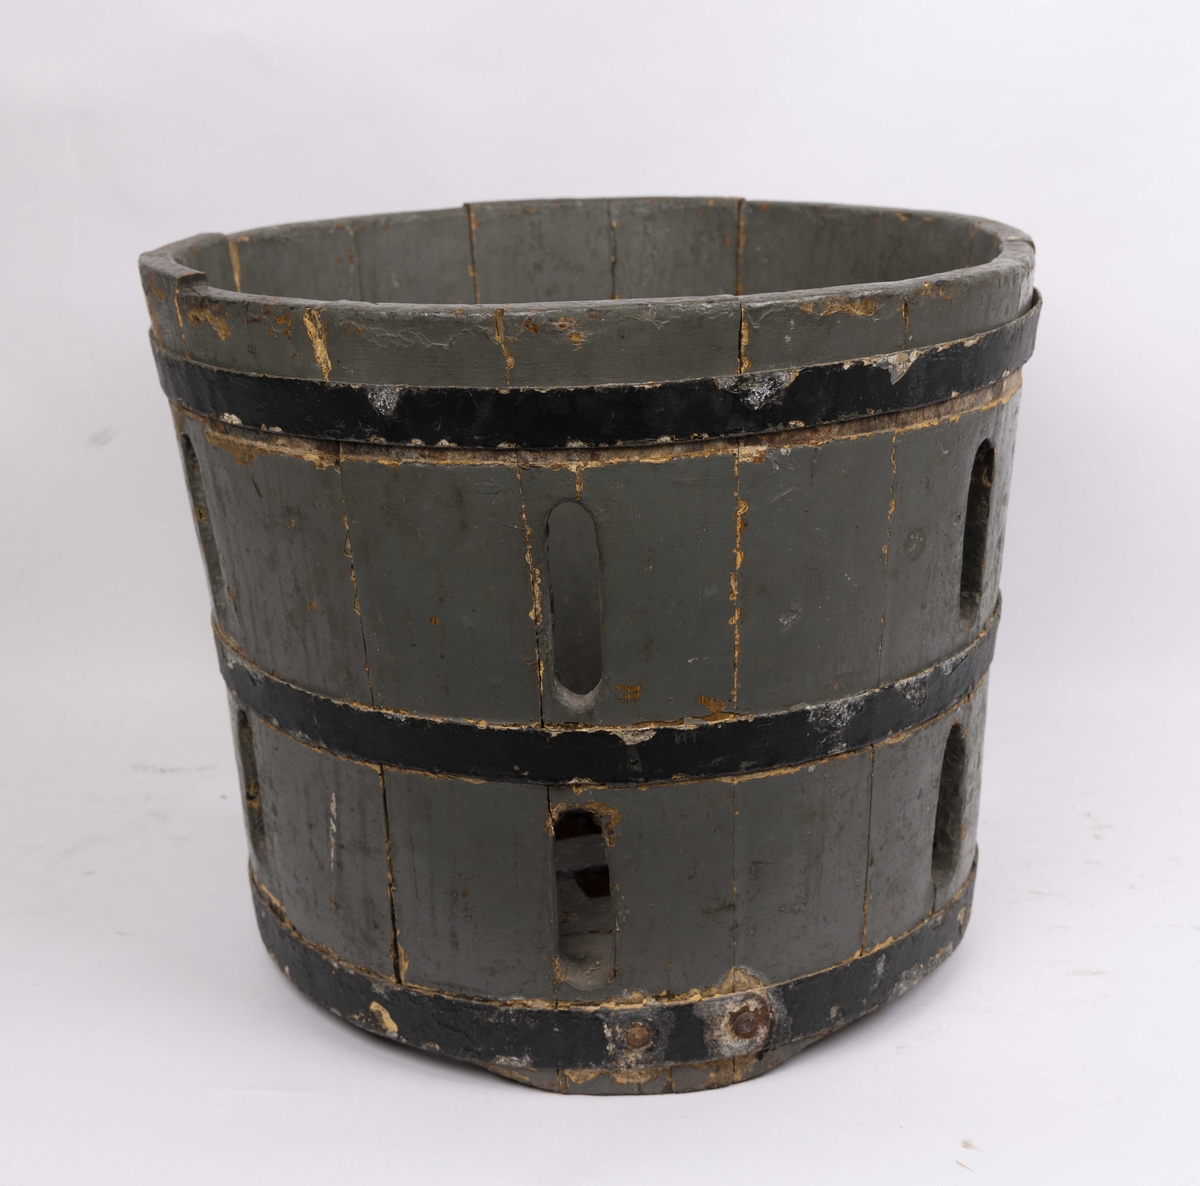 Trebøtte. Sylinderformet balje med band av jern. Bunn laget av tregitter for at vann skal kunne renne ut.